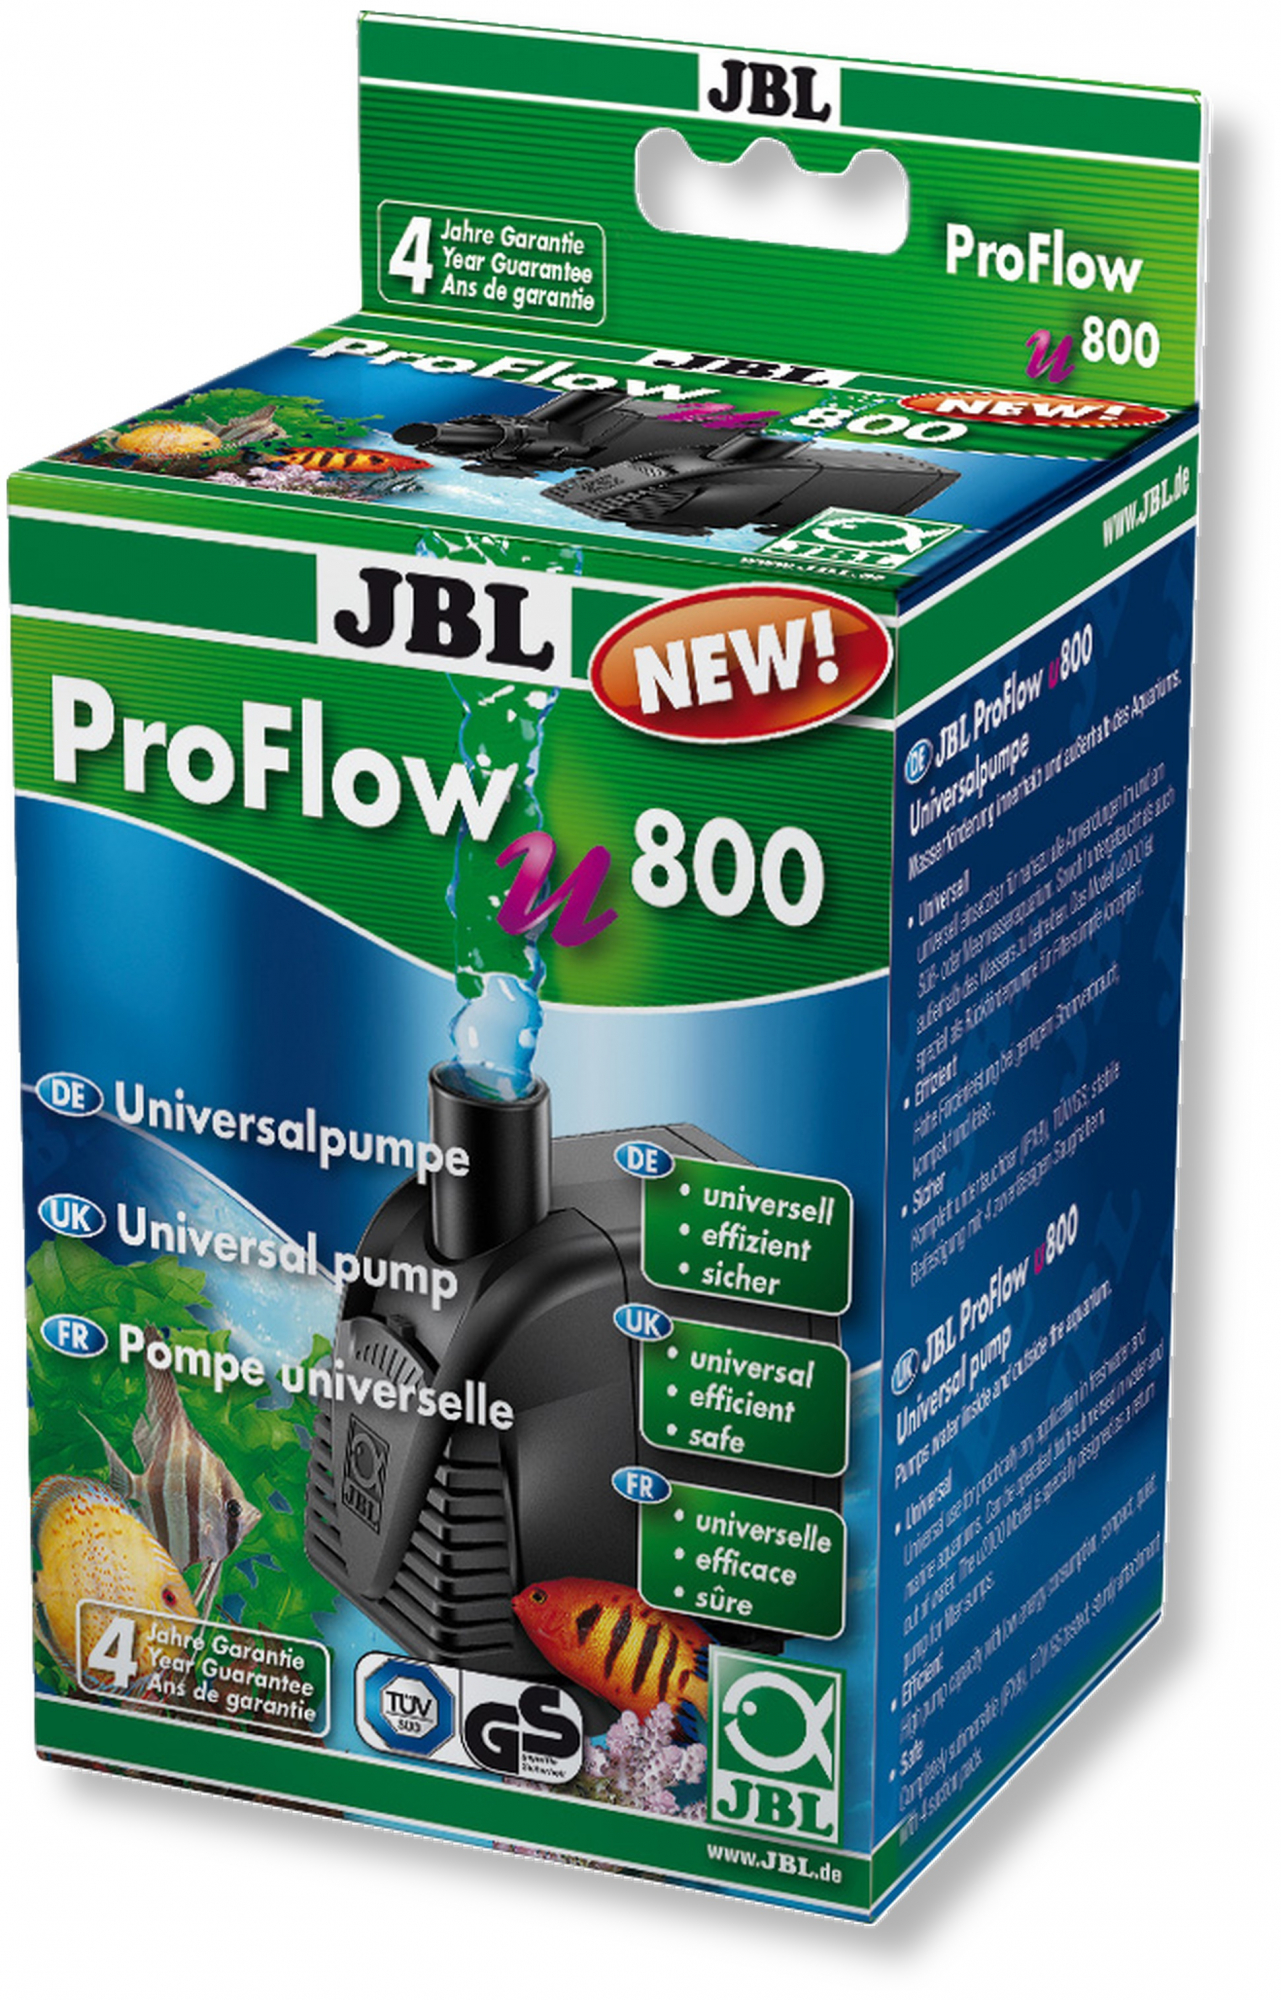 JBL Proflow , pompa universale - diversi modelli disponibili